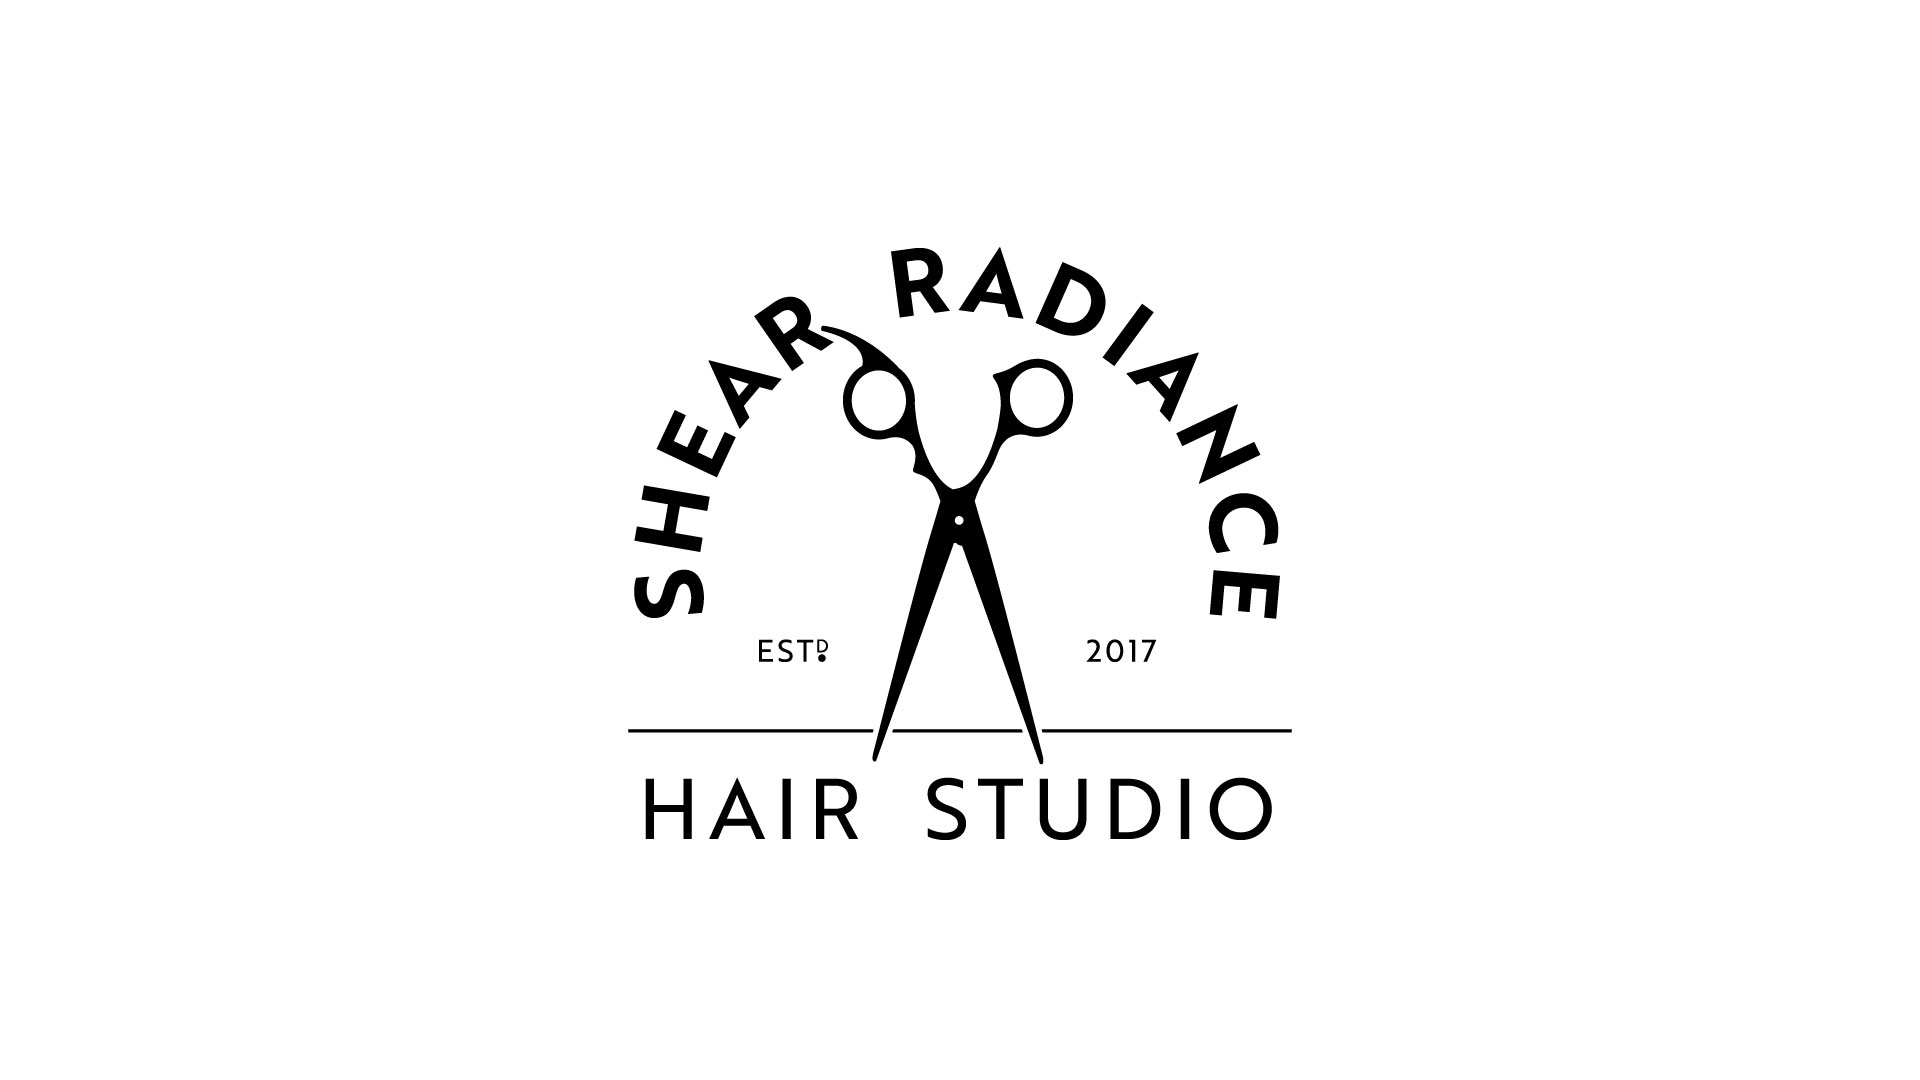 Shear Radiance Hair Studio